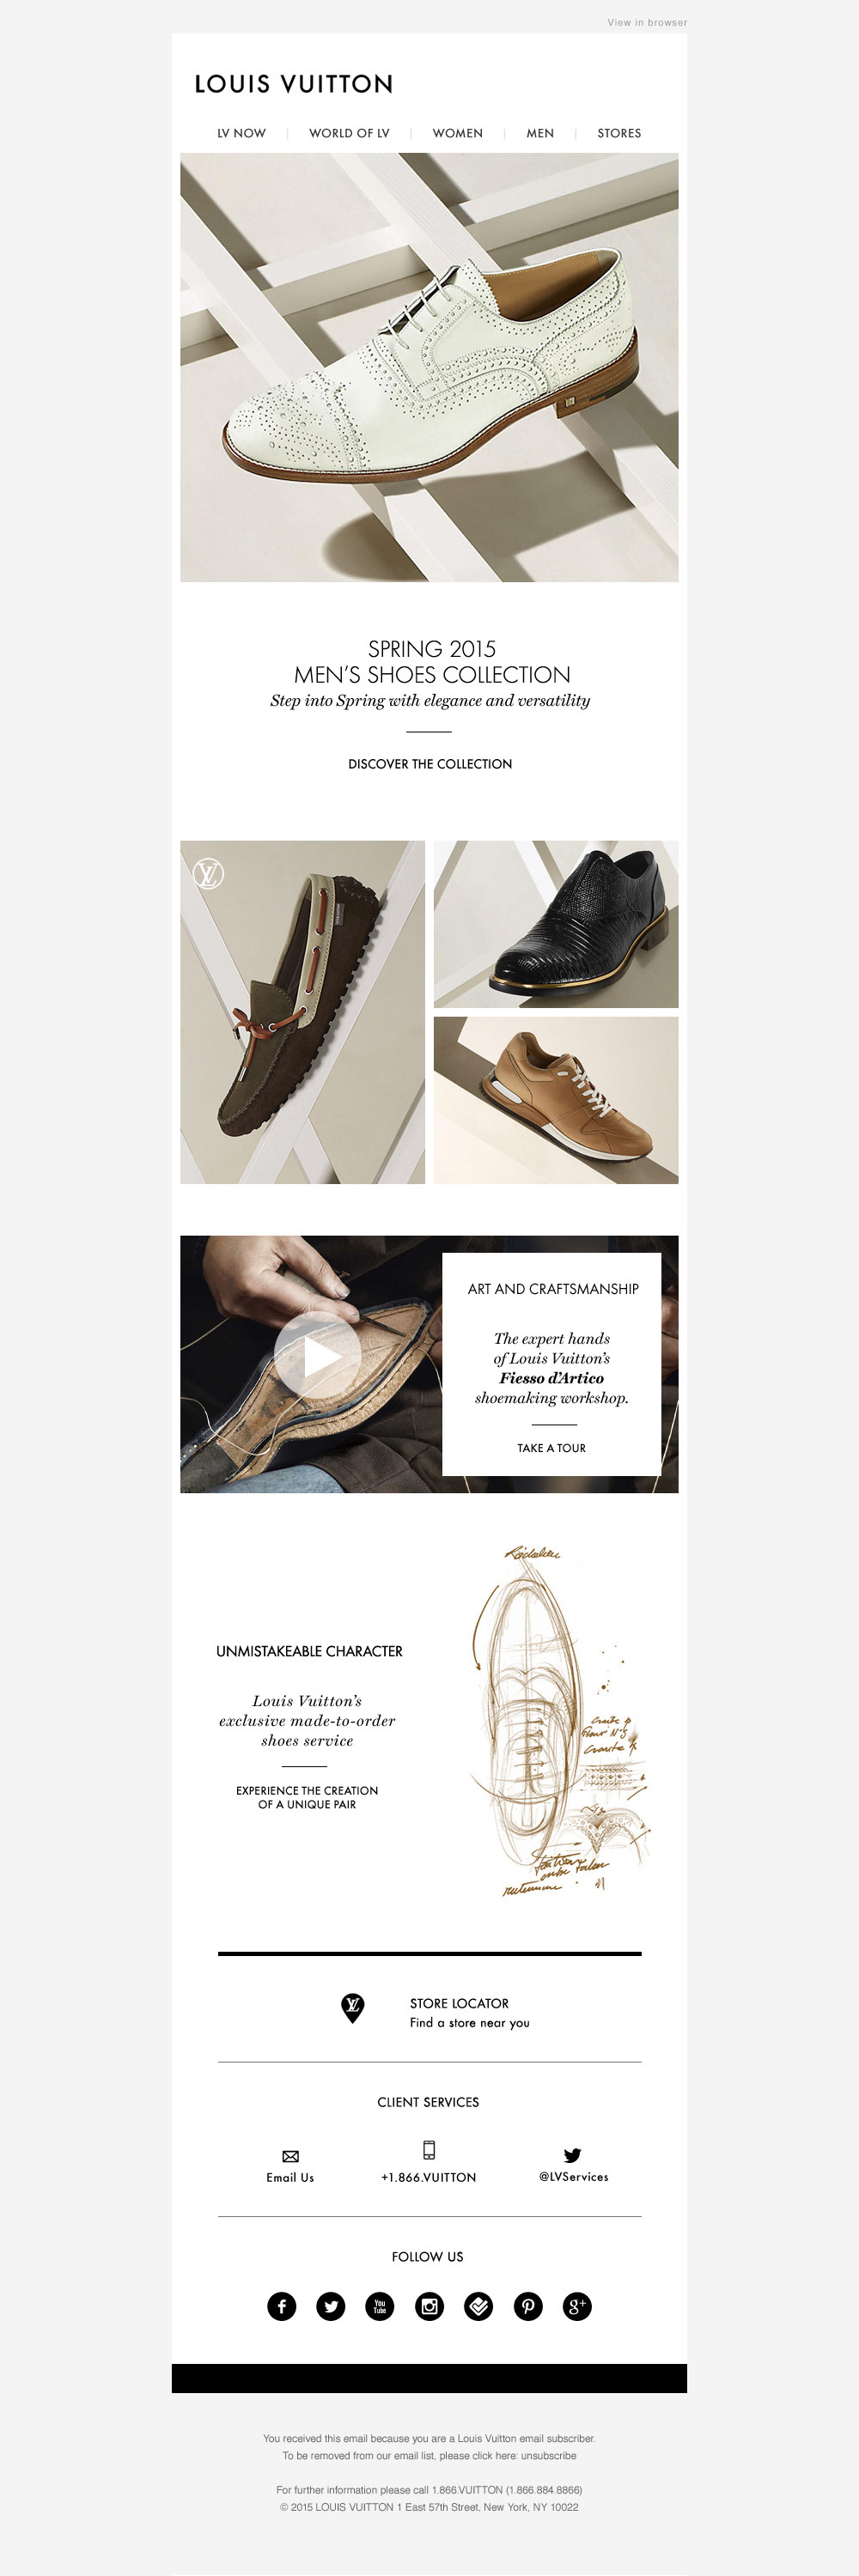 George Gozum - Louis Vuitton Email Redesign